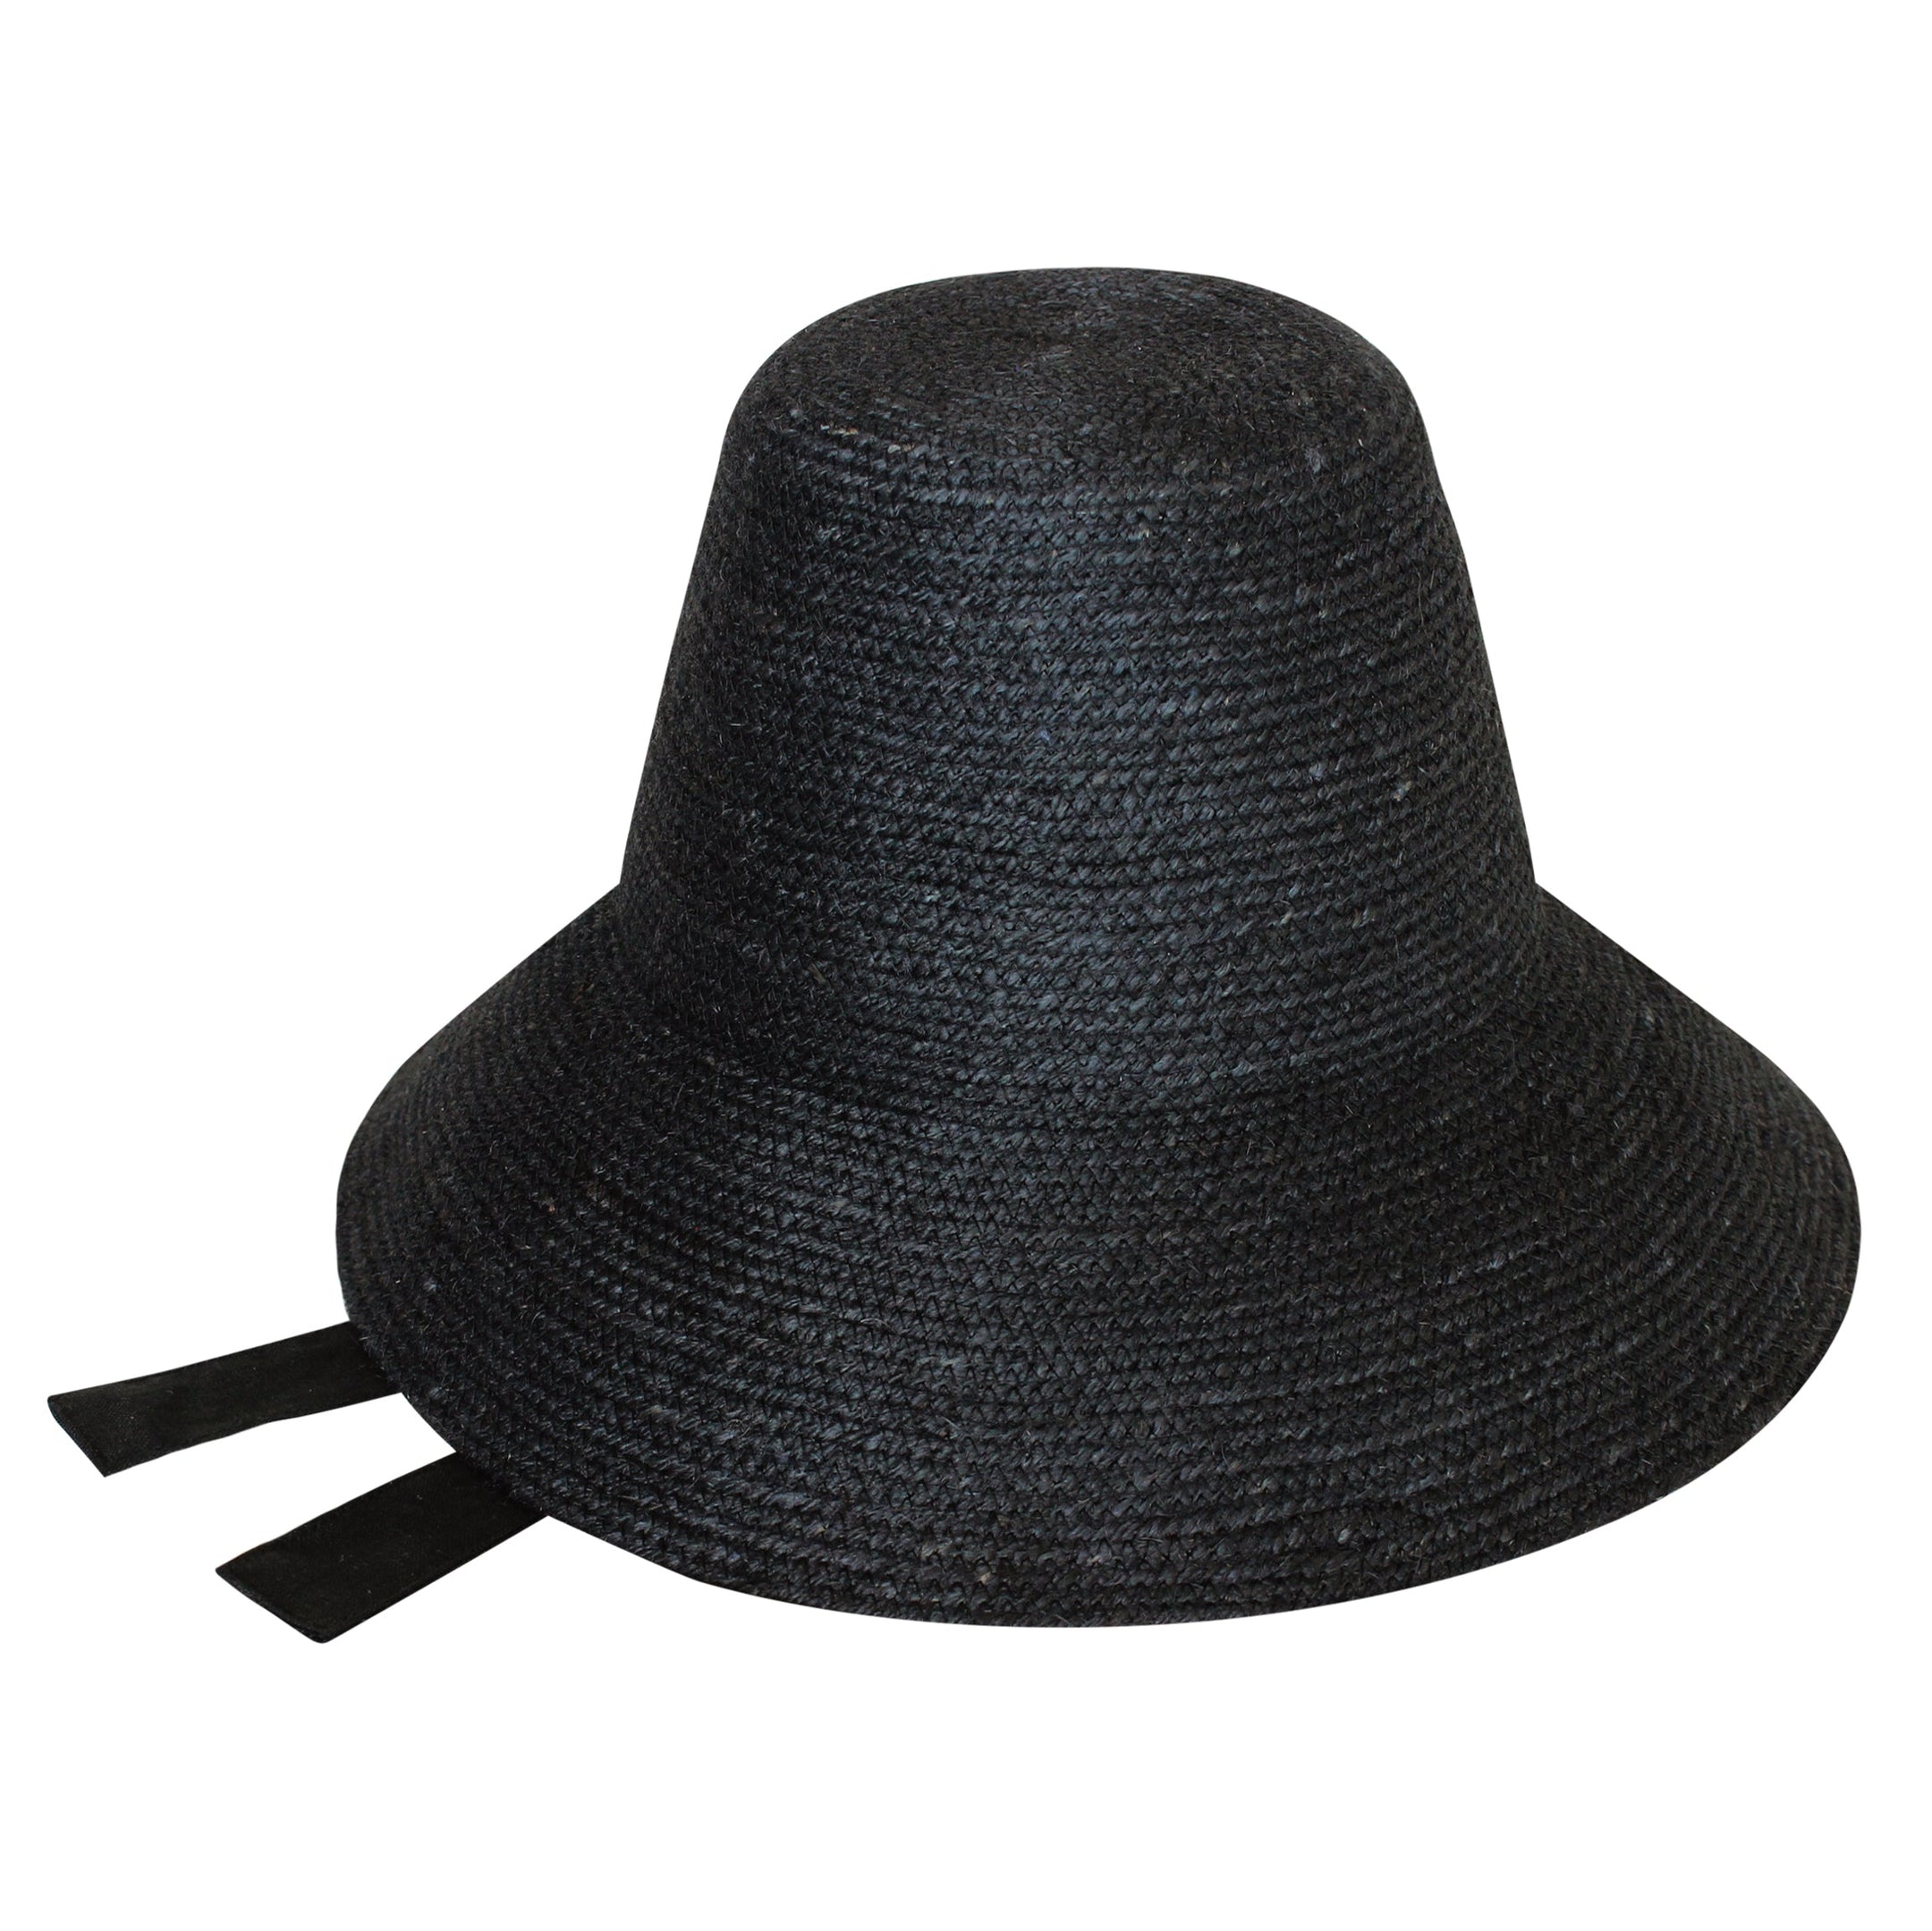 Buy MEG Jute Straw Hat, in Black by BrunnaCo